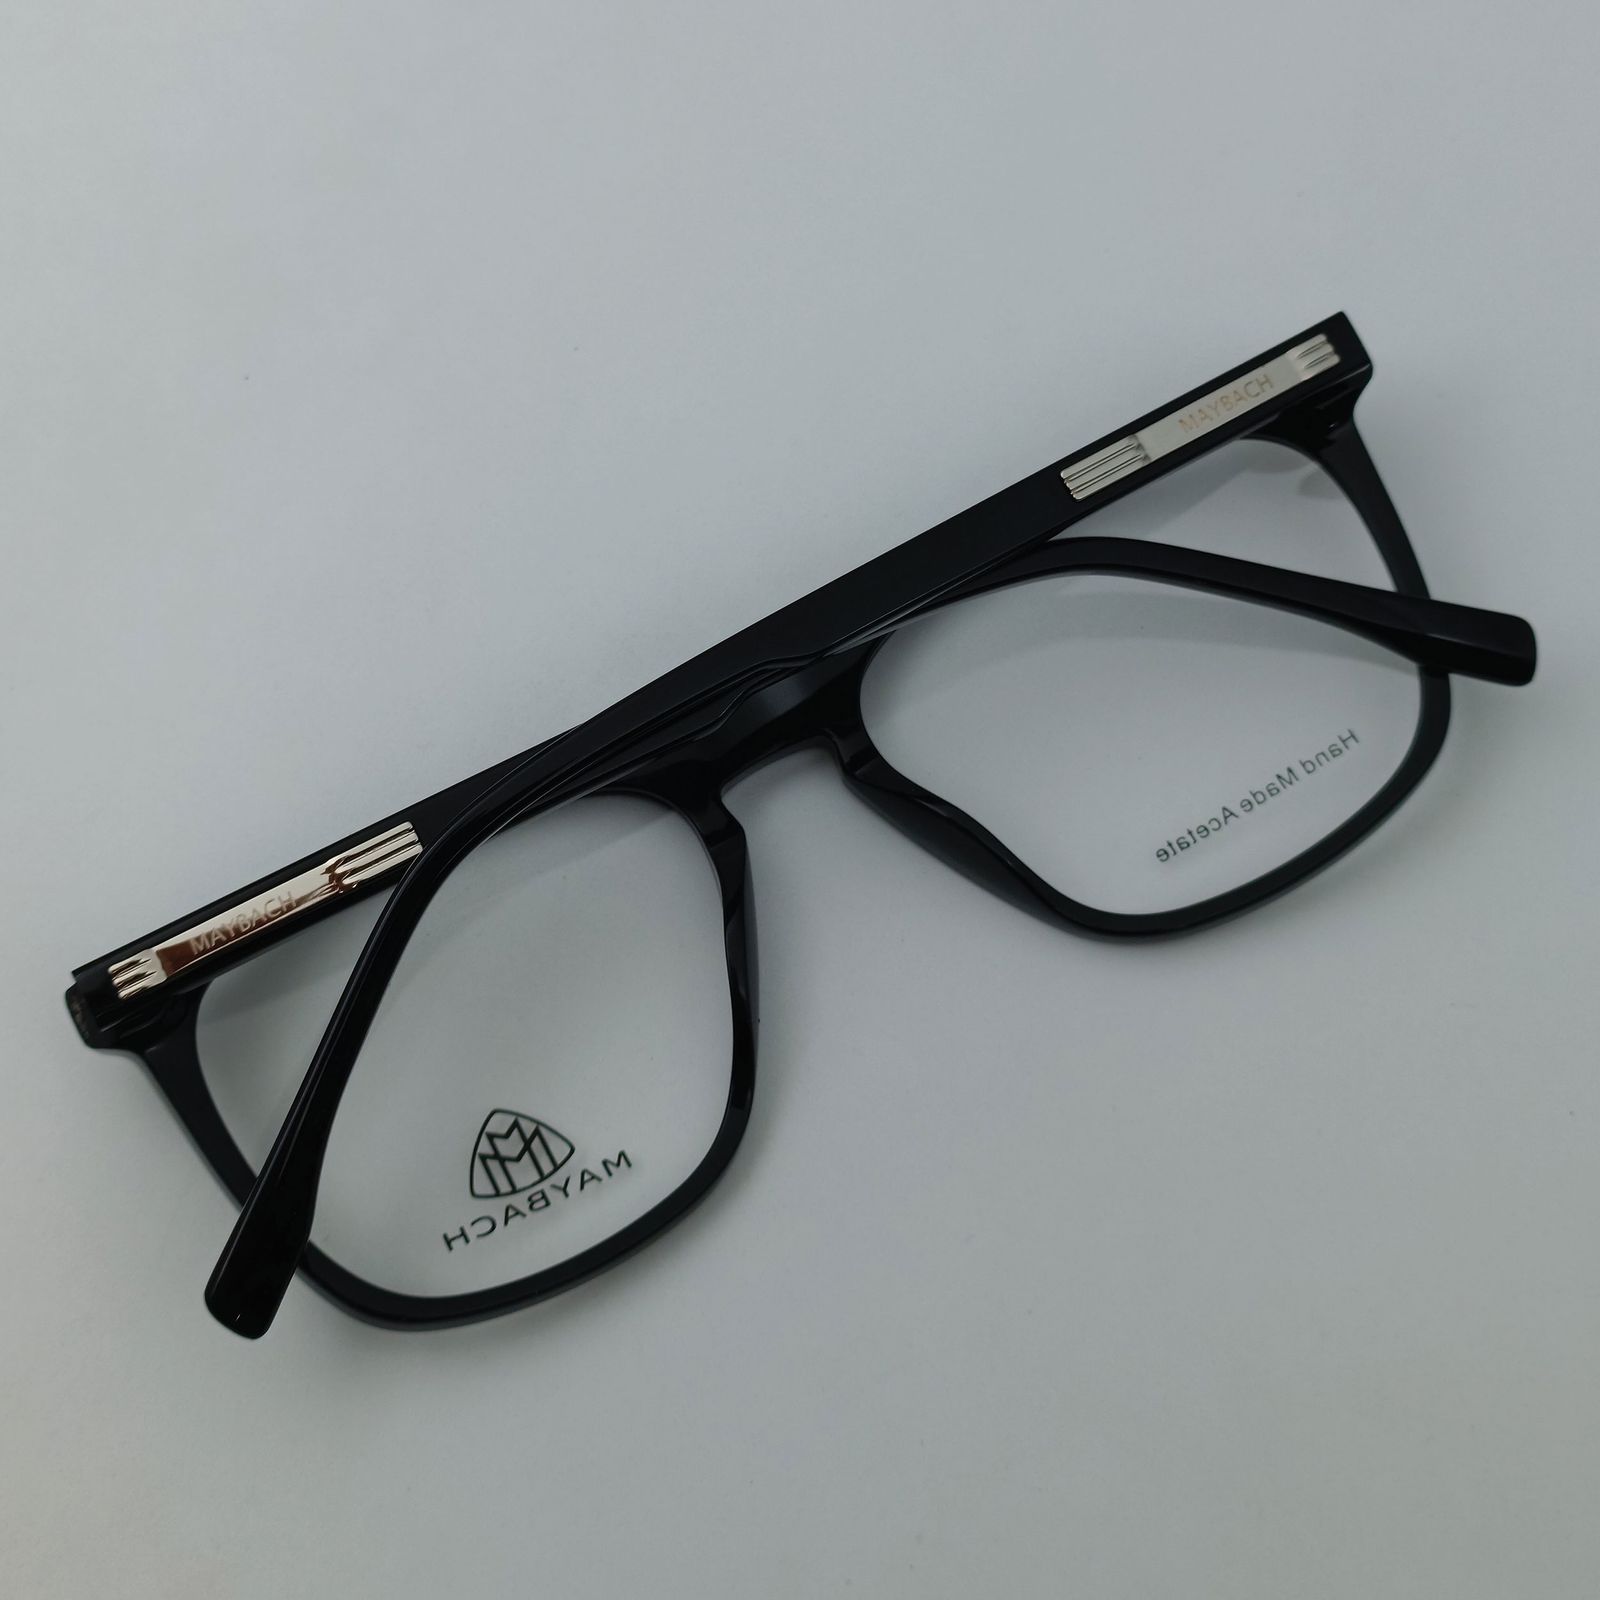 فریم عینک طبی میباخ مدل 6504 C1 -  - 11